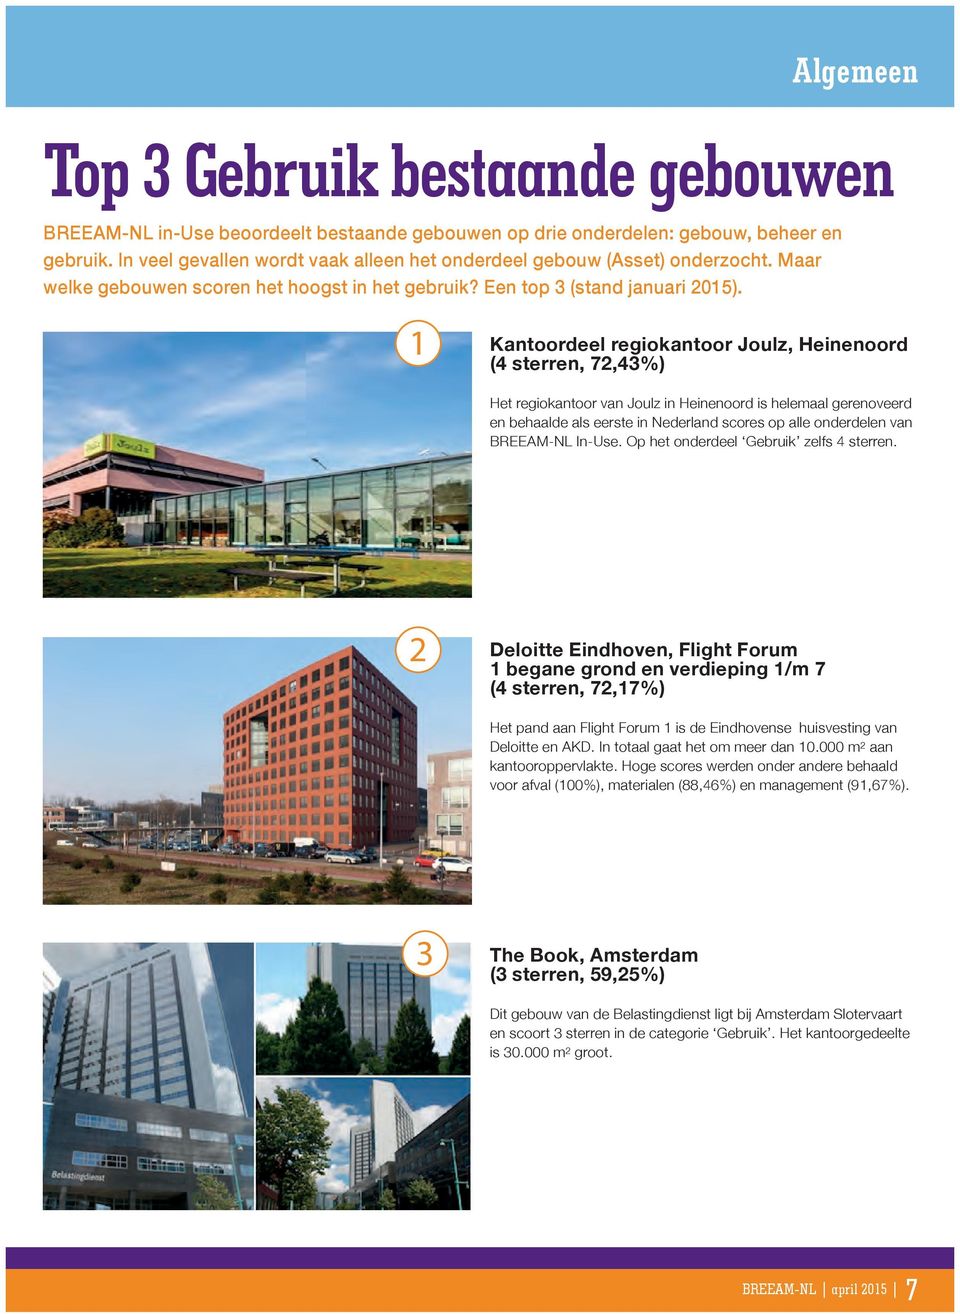 1 Kantoordeel regiokantoor Joulz, Heinenoord (4 sterren, 72,43%) Het regiokantoor van Joulz in Heinenoord is helemaal gerenoveerd en behaalde als eerste in Nederland scores op alle onderdelen van